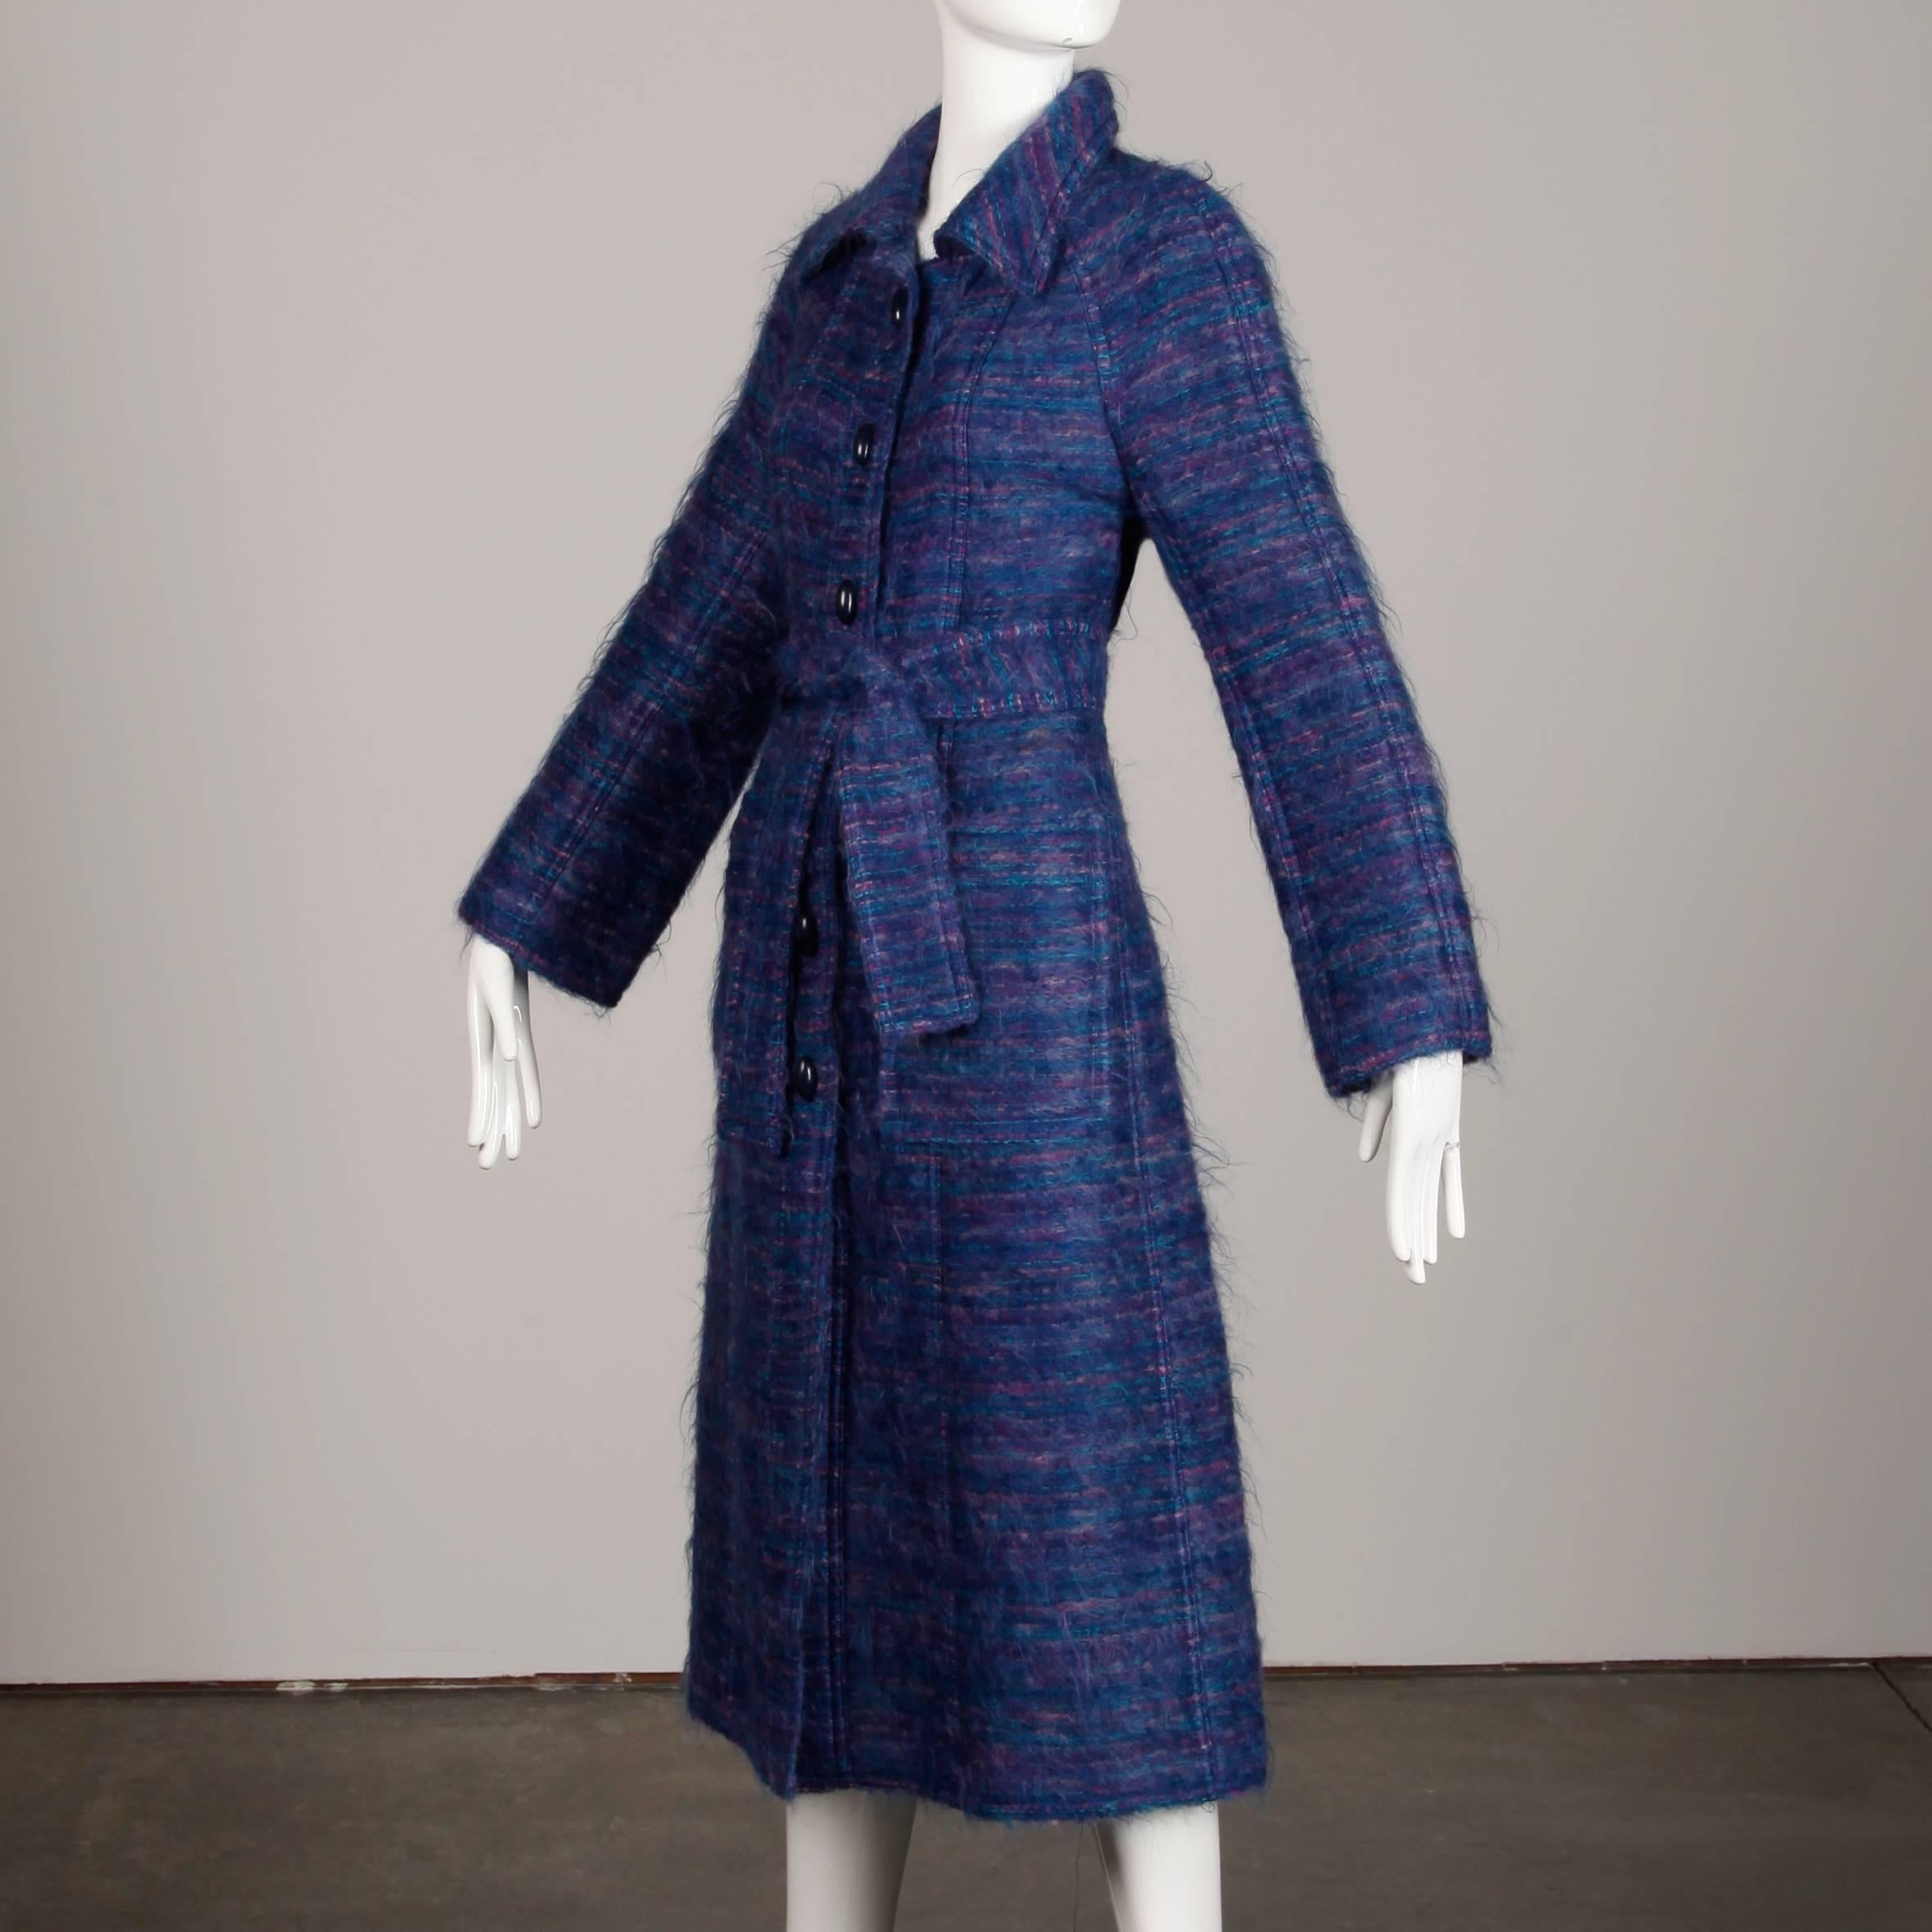 Magnifique manteau vintage de Bernard Perris en mohair tissé violet et bleu, avec ceinture cravate assortie. Partiellement doublé, il se ferme par un bouton et une cravate sur le devant. Poches latérales plaquées. Le buste mesure 38